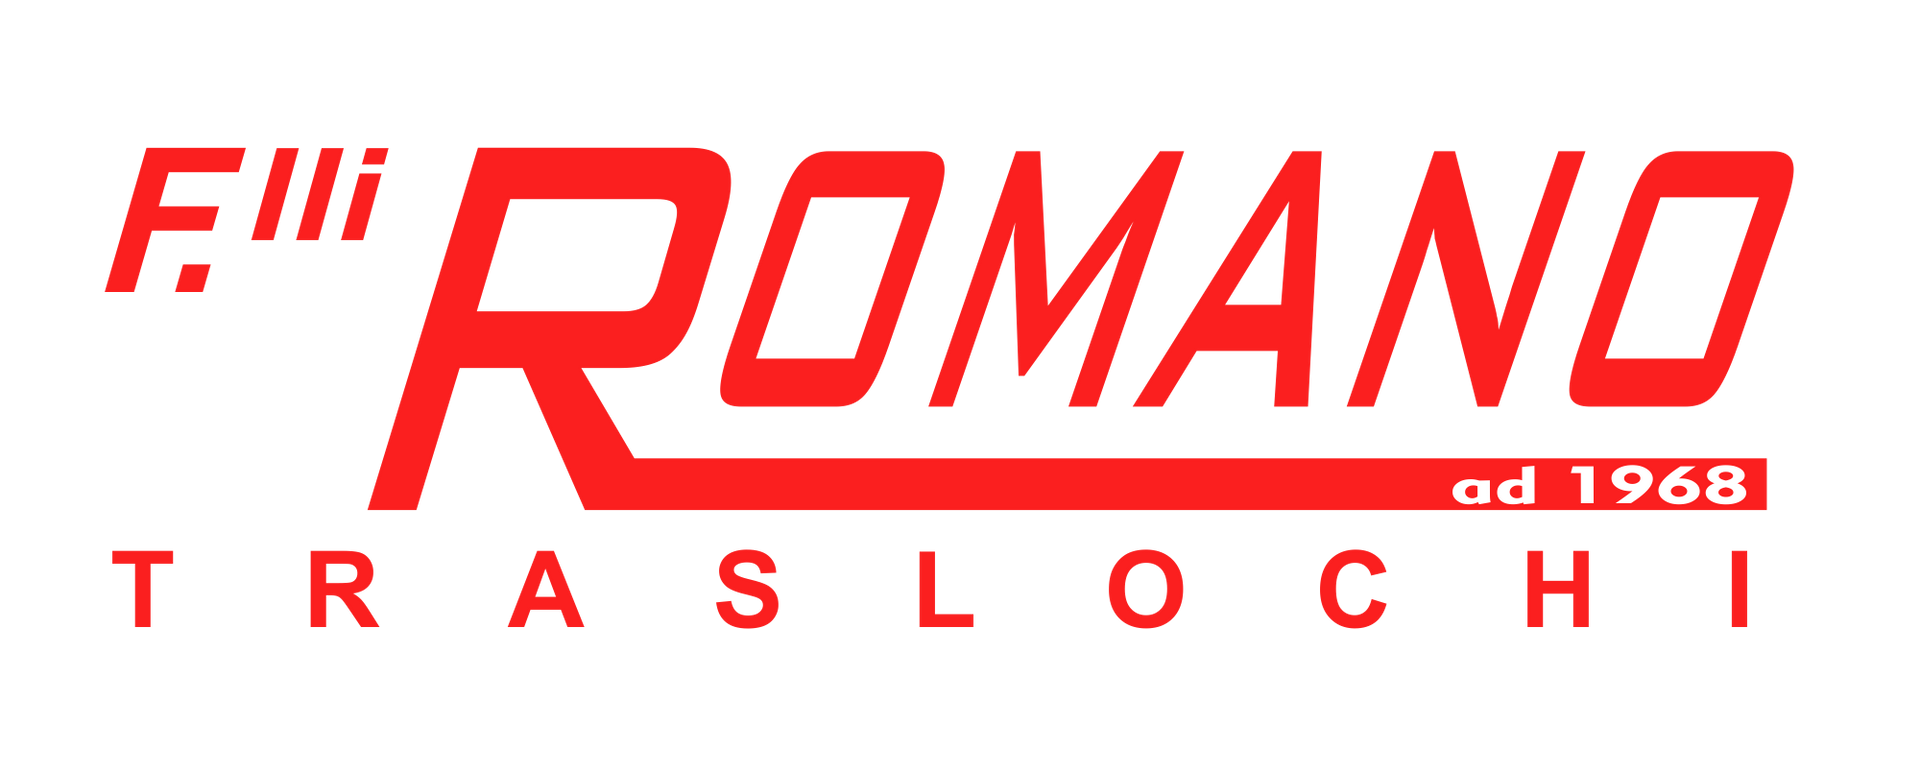 Traslochi Fratelli Romano Logo